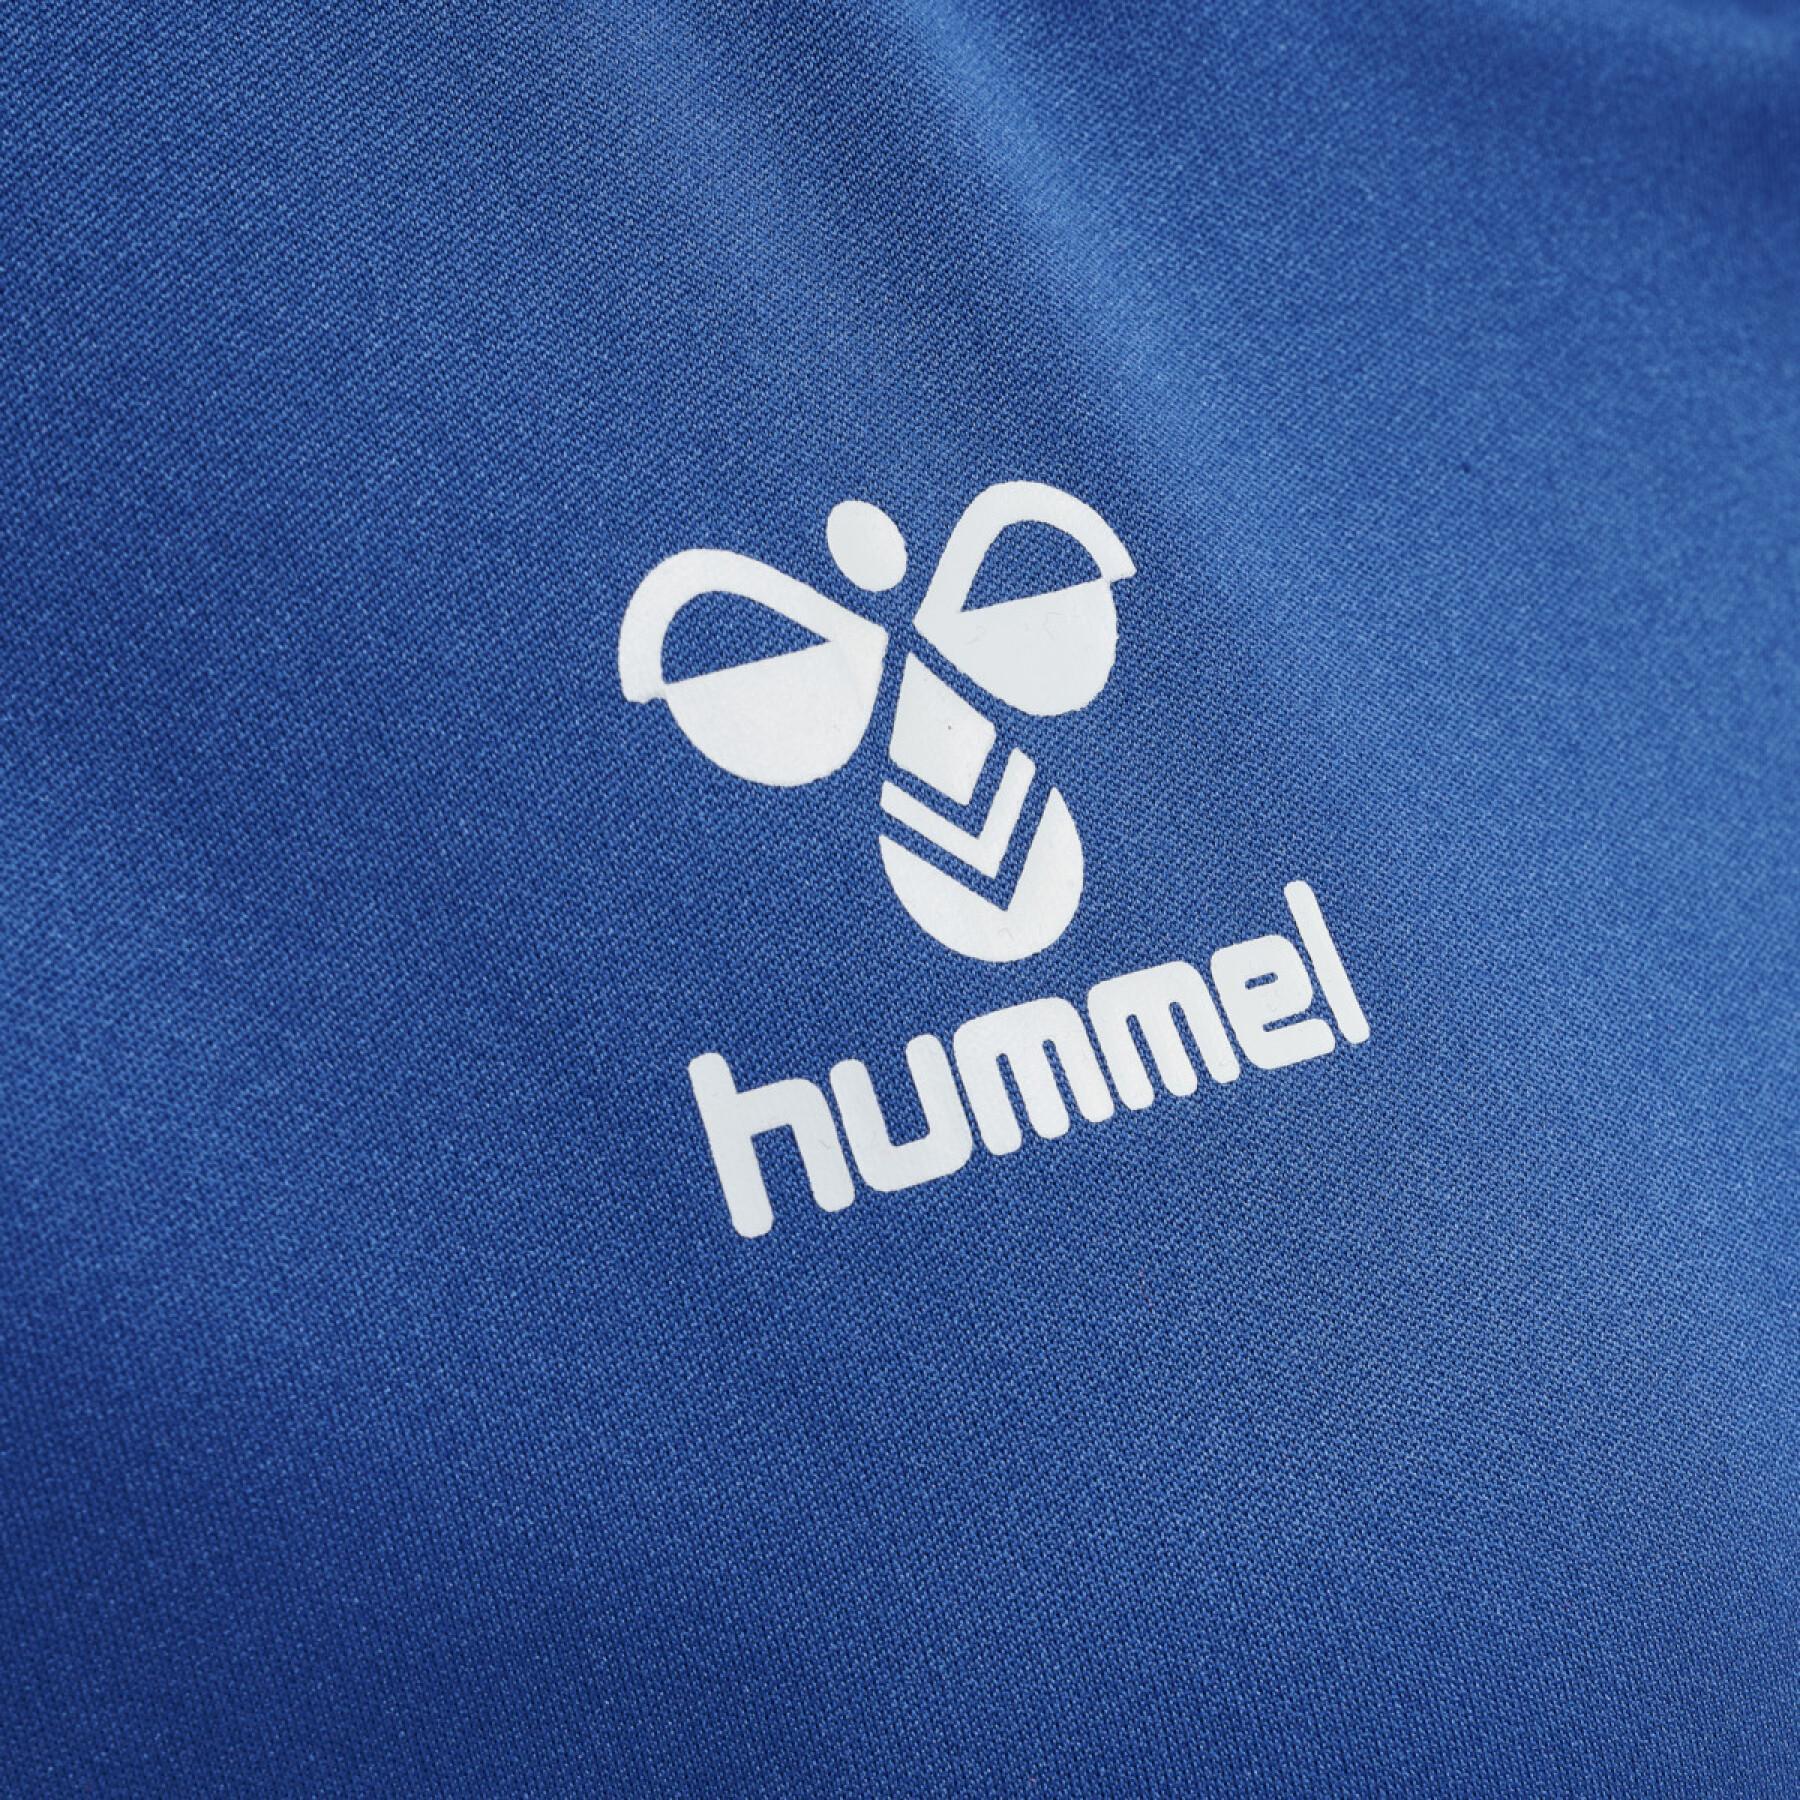 T-shirt femme Hummel hmlhmlCORE volley